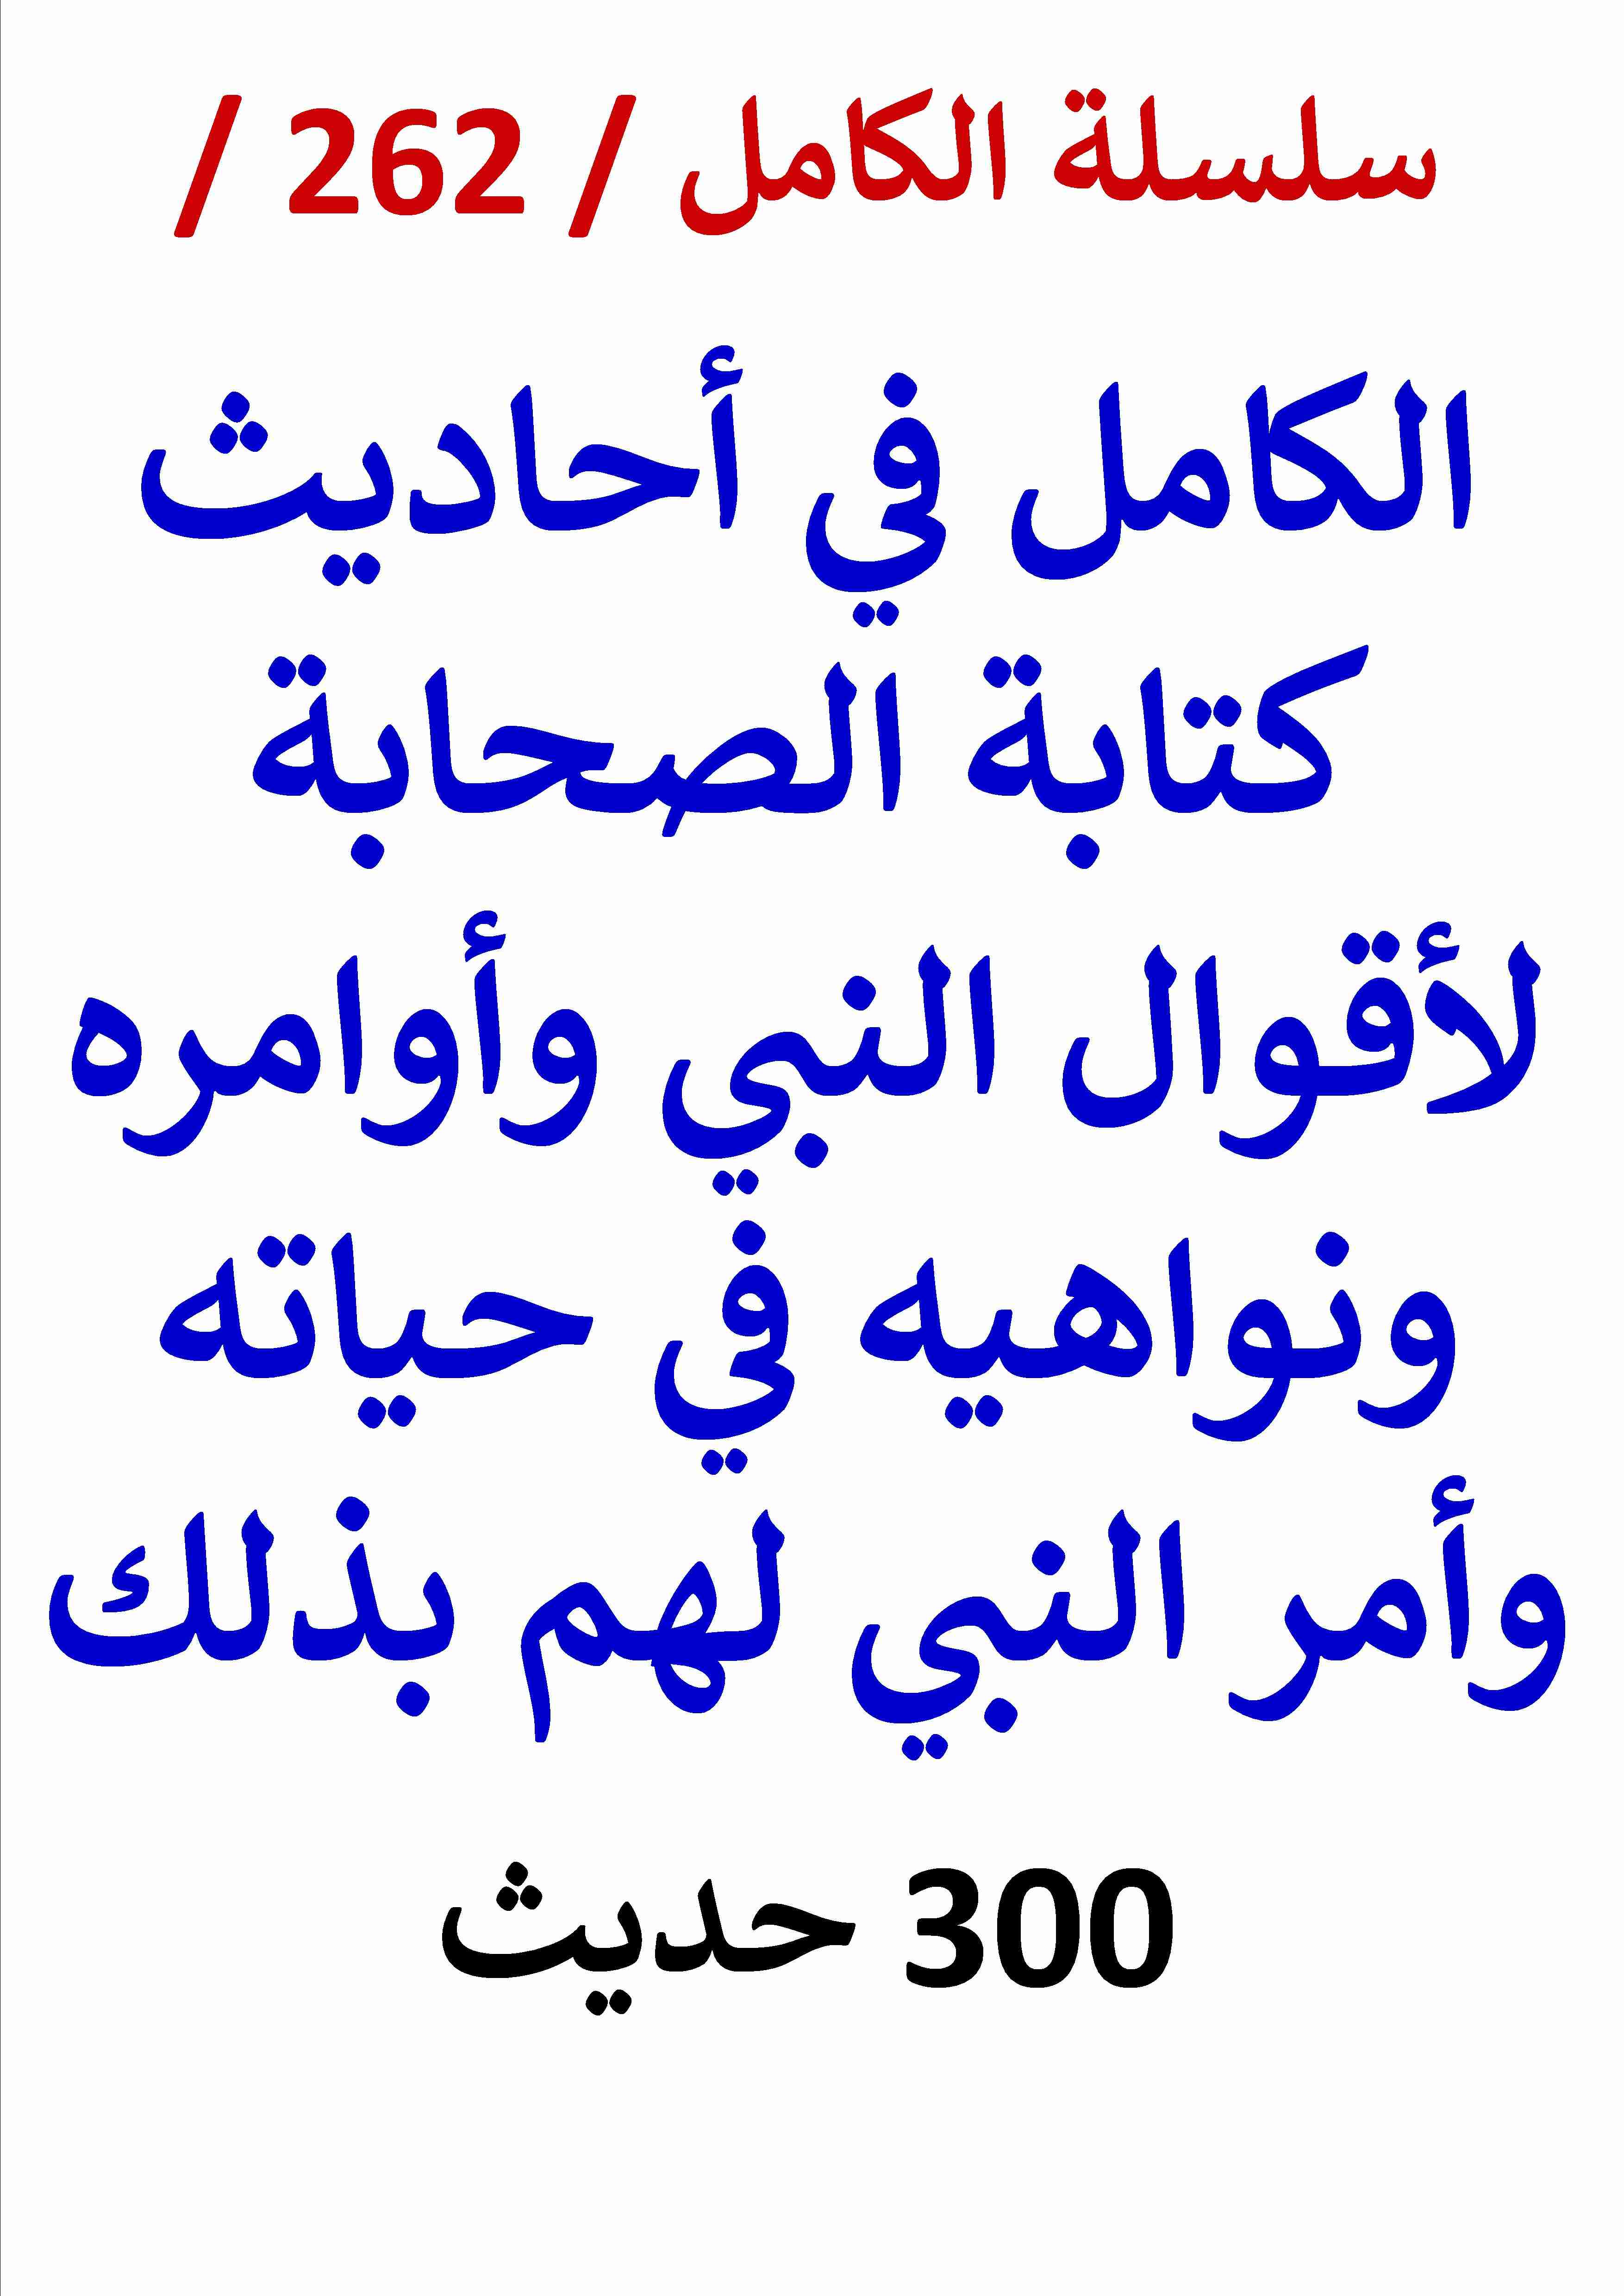 كتاب الكامل في احاديث كتابة الصحابة لاقوال النبي في حياته وامر النبي لهم بذلك - 300 حديث لـ عامر الحسيني